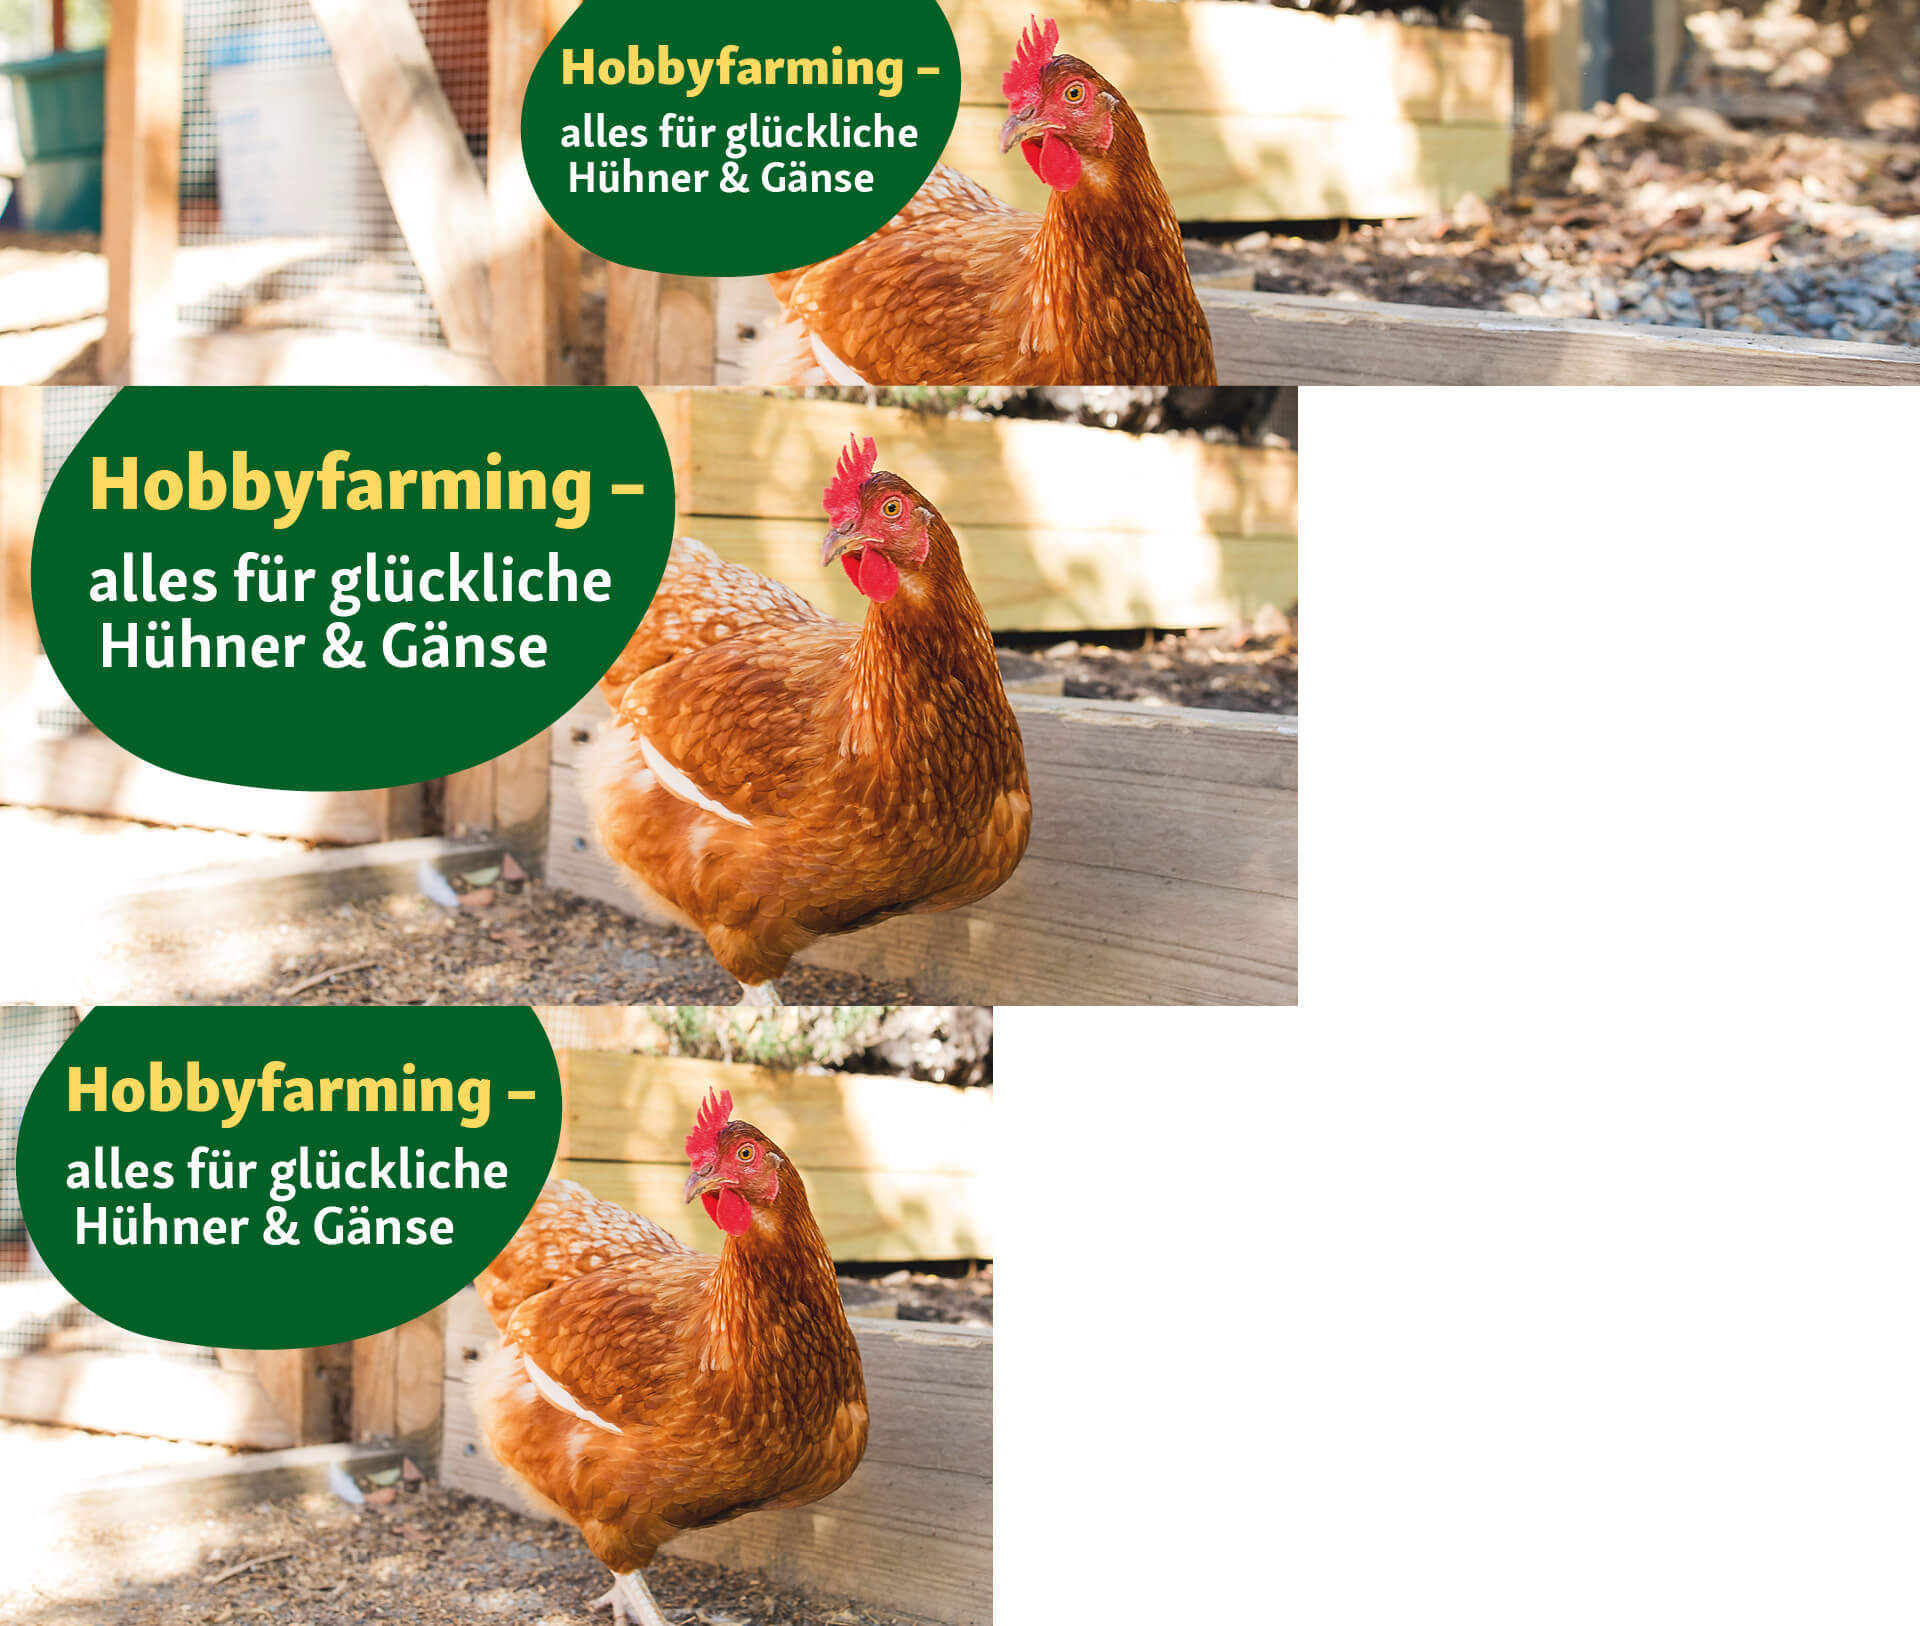 Hobbyfarming- alles für glückliche Hühner & Gänse